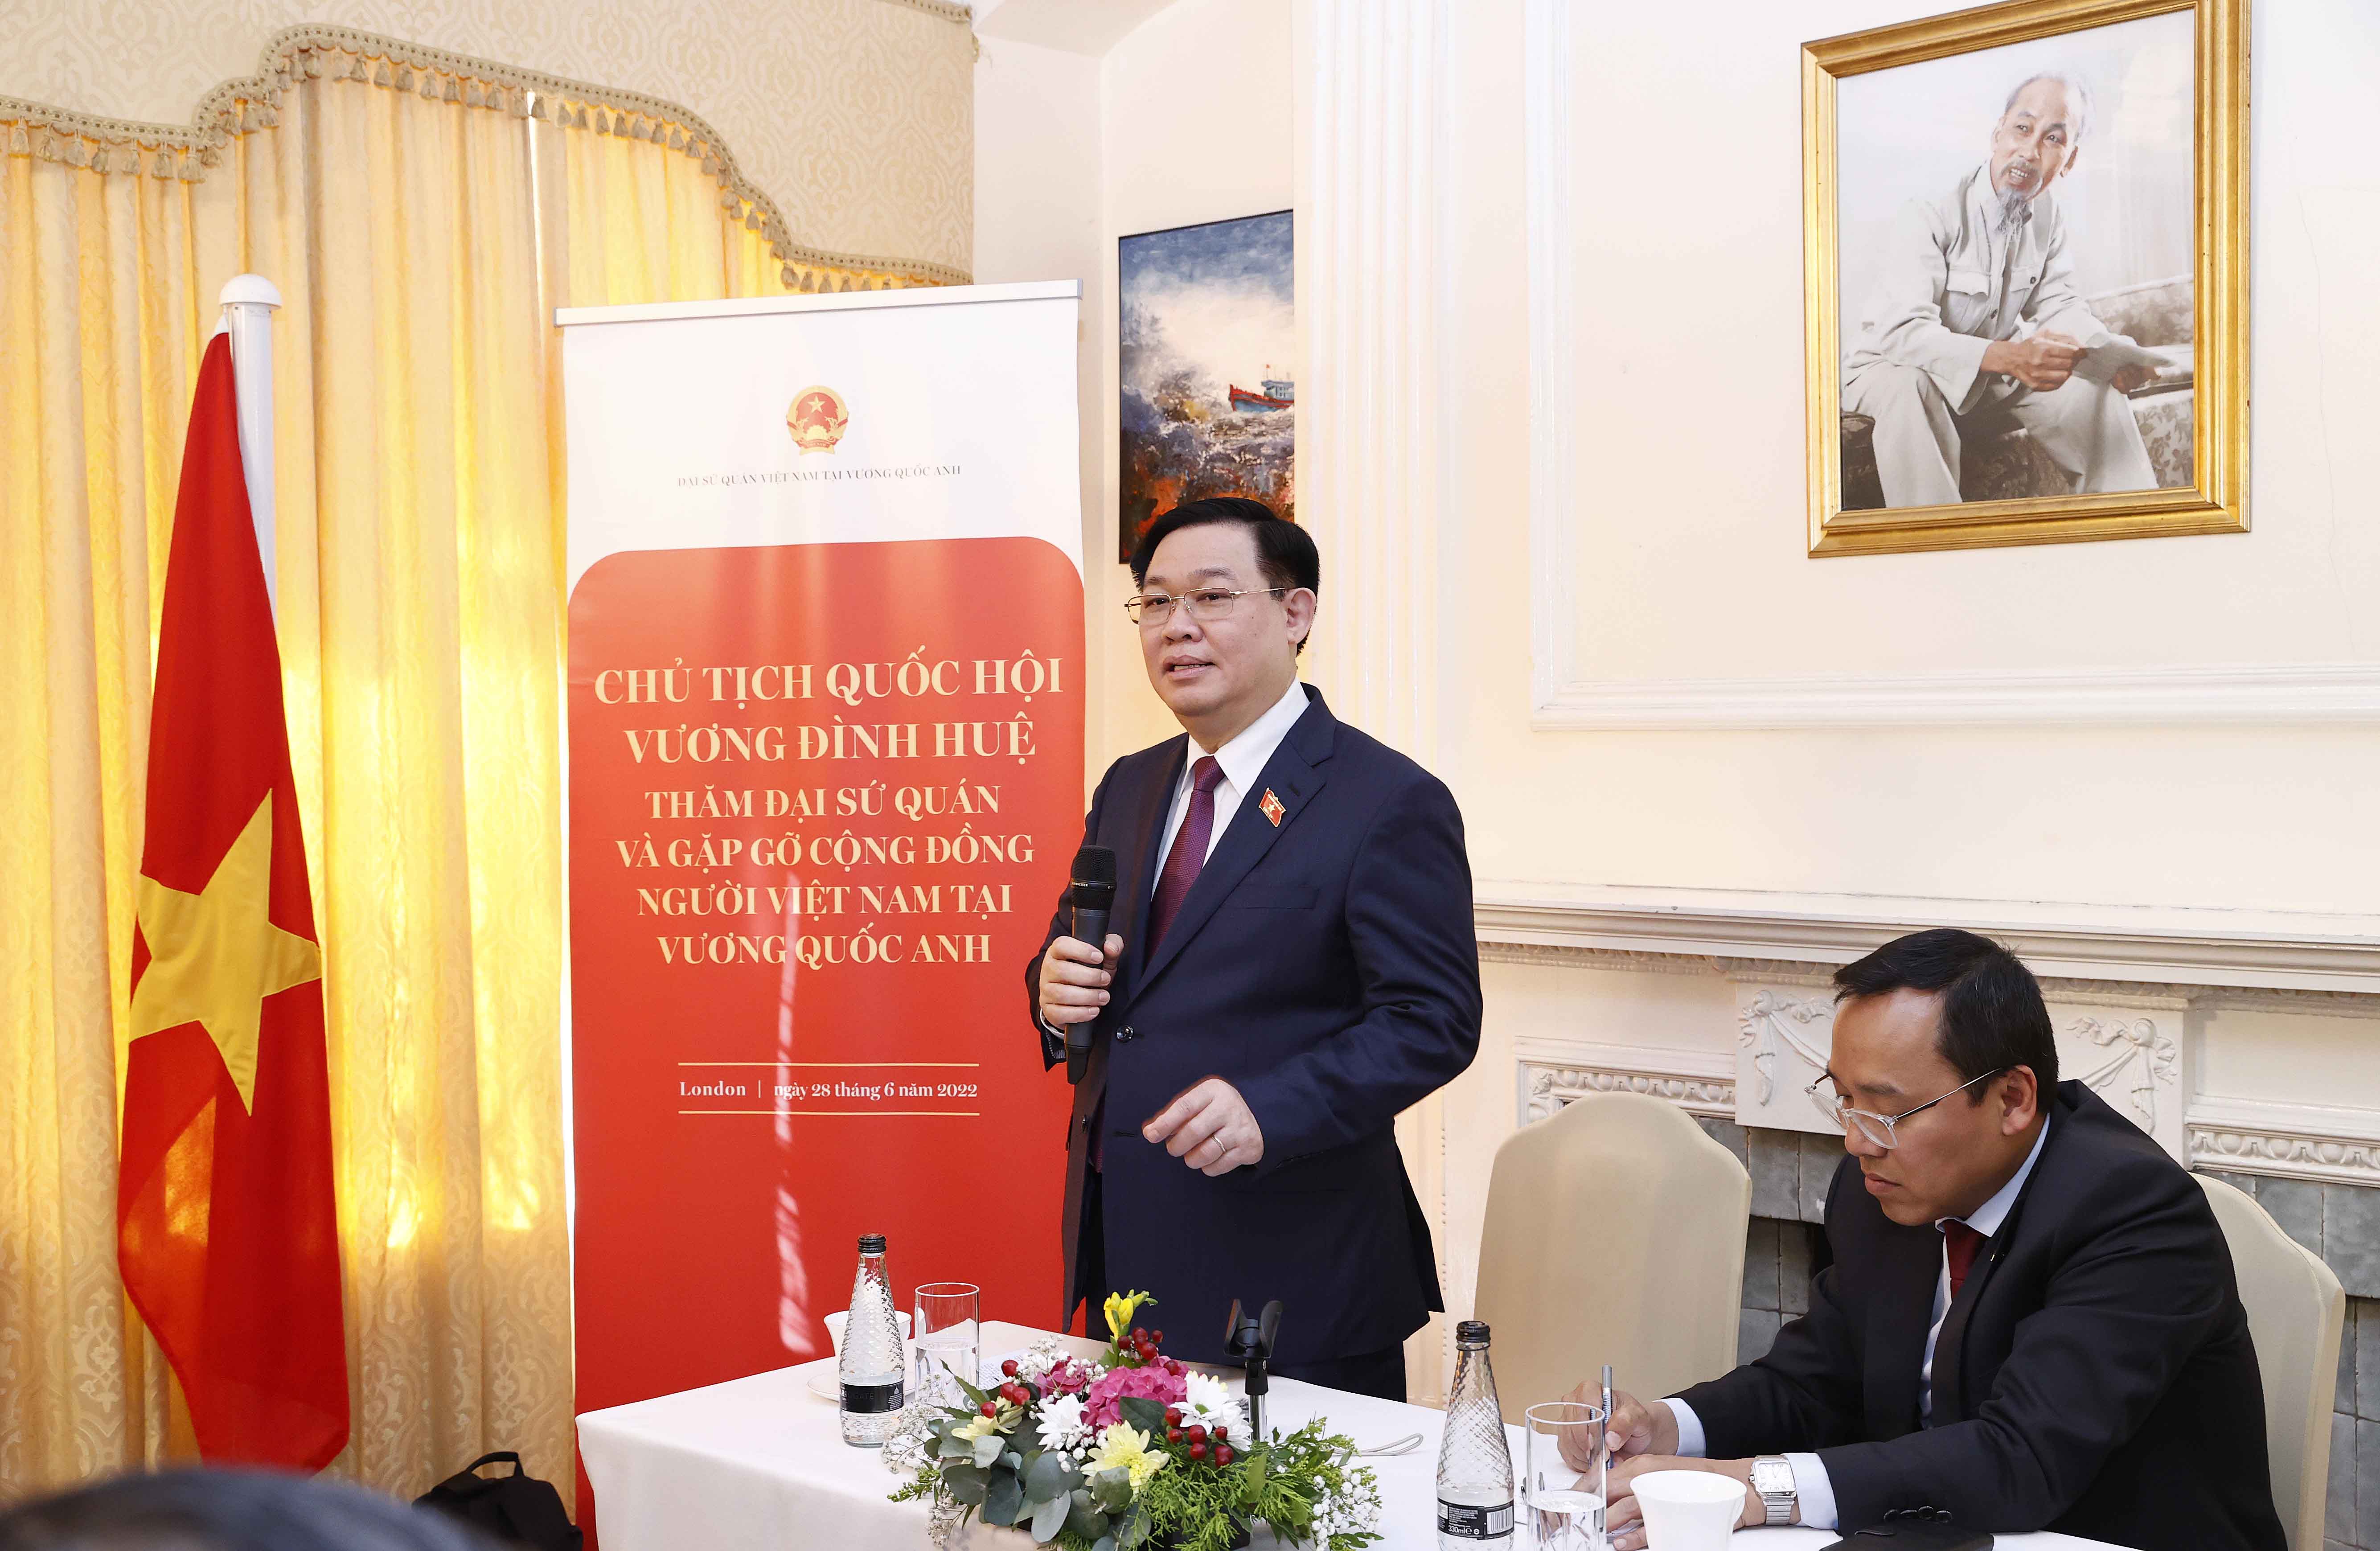 Chủ tịch Quốc hội Vương Đình Huệ thăm Đại sứ quán và gặp gỡ cộng đồng người Việt Nam tại Vương quốc Anh